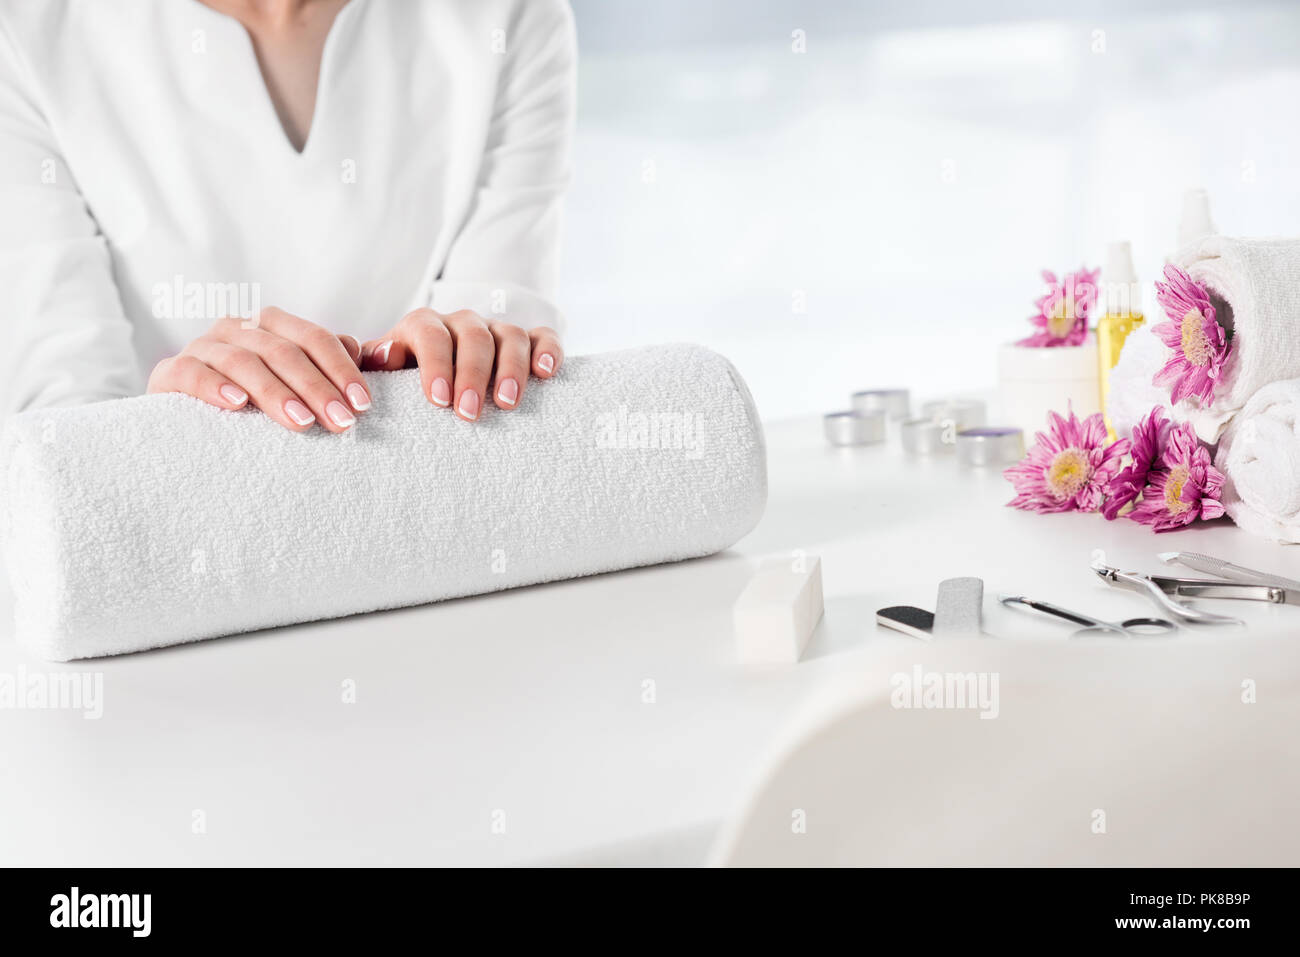 Immagine ritagliata della donna tenendo le mani a tavola con gli asciugamani, fiori, candele, aroma le bottiglie di olio e di strumenti per la manicure nel salone di bellezza Foto Stock